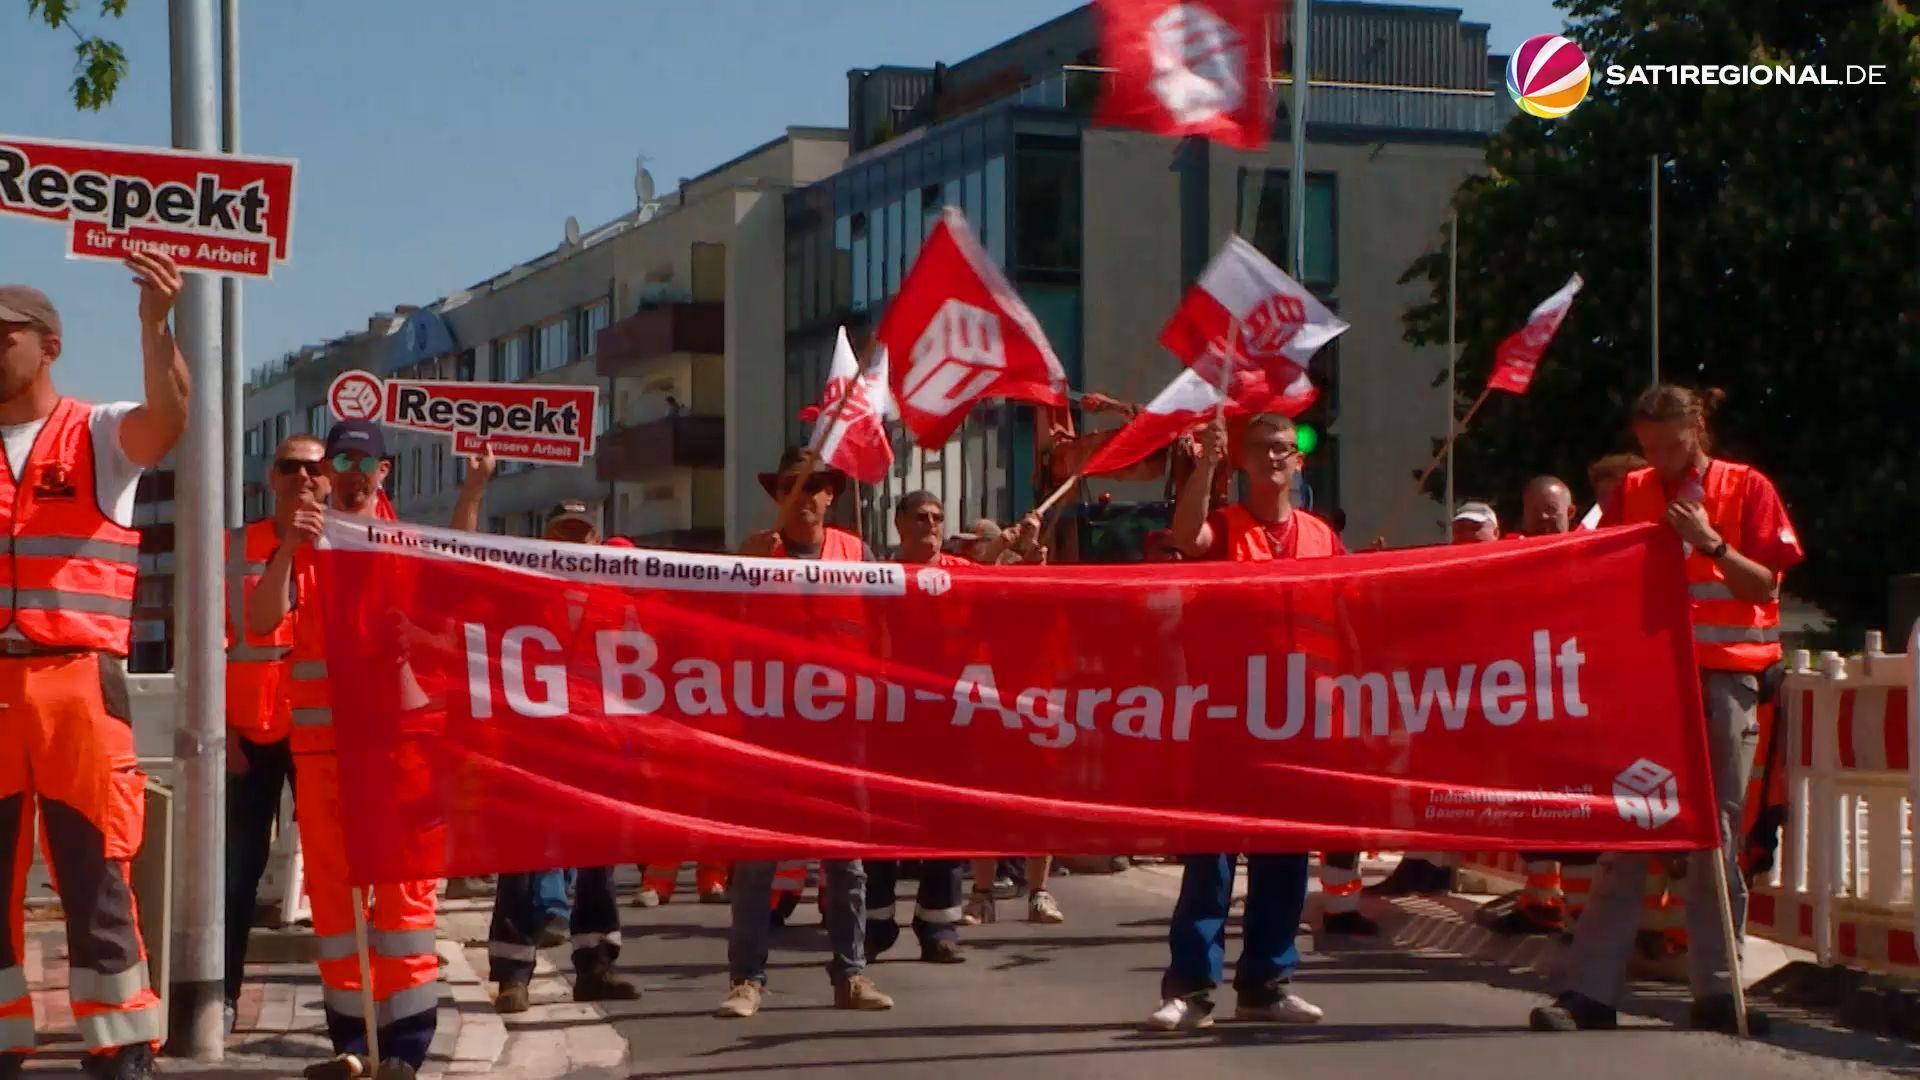 Streik: Bauarbeiter fordern 500 Euro mehr Gehalt